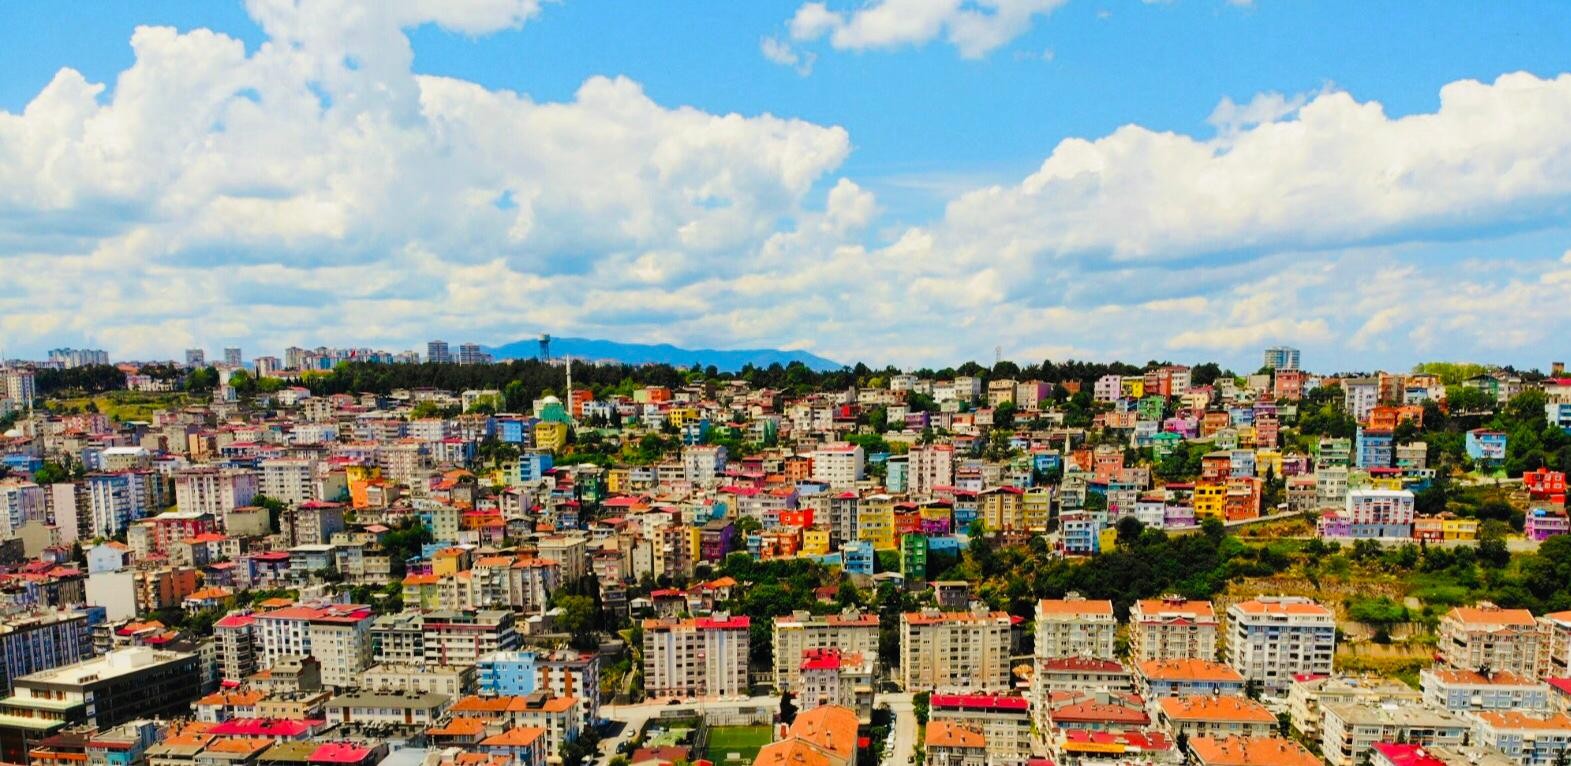 Samsun'un rengarenk evleri TEKNOFEST'e de renk katmak istiyor
